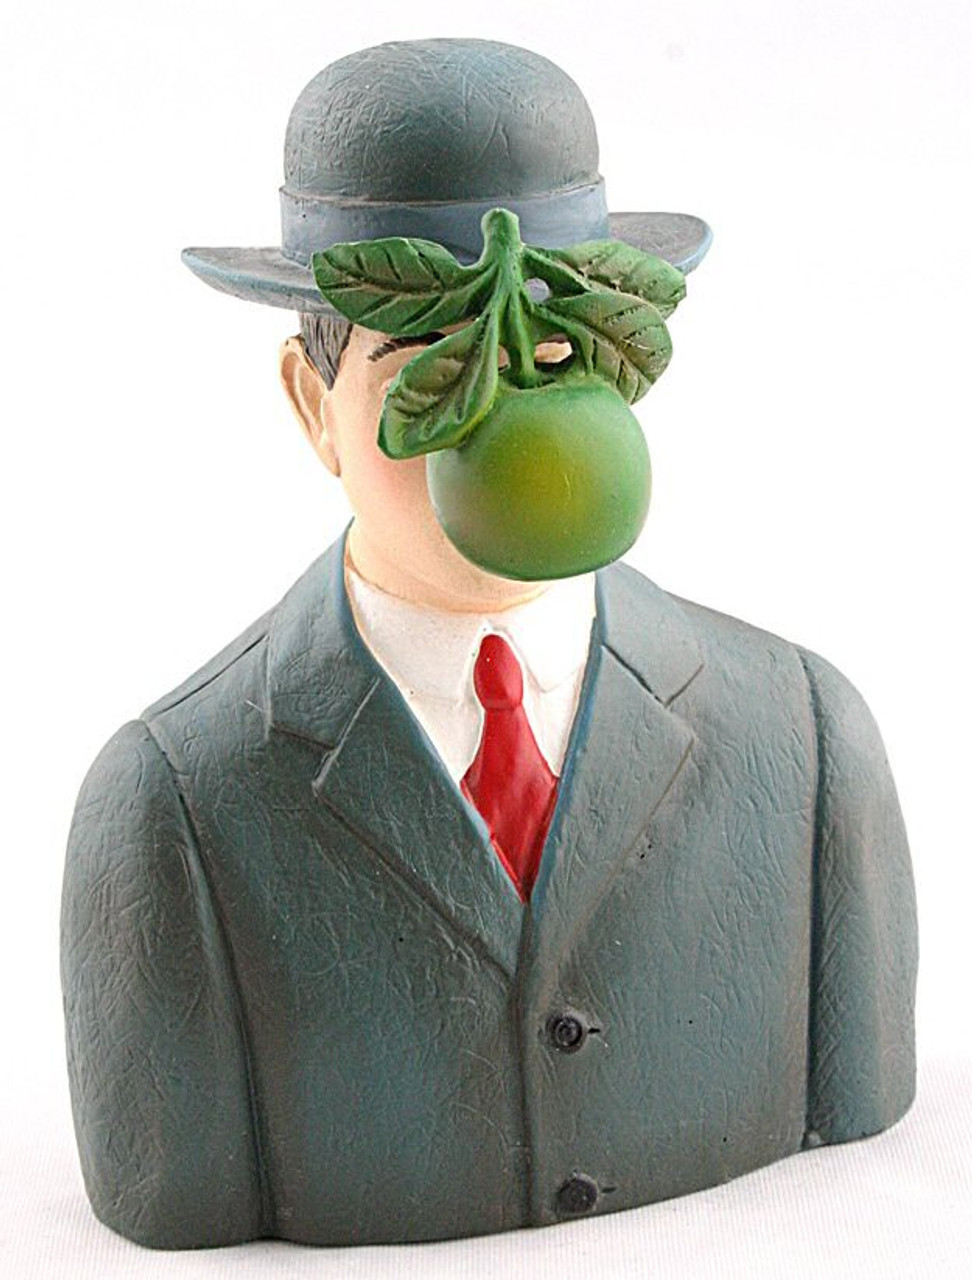 Homme Dans Un Chapeau De Chapeau Melon Image stock - Image du